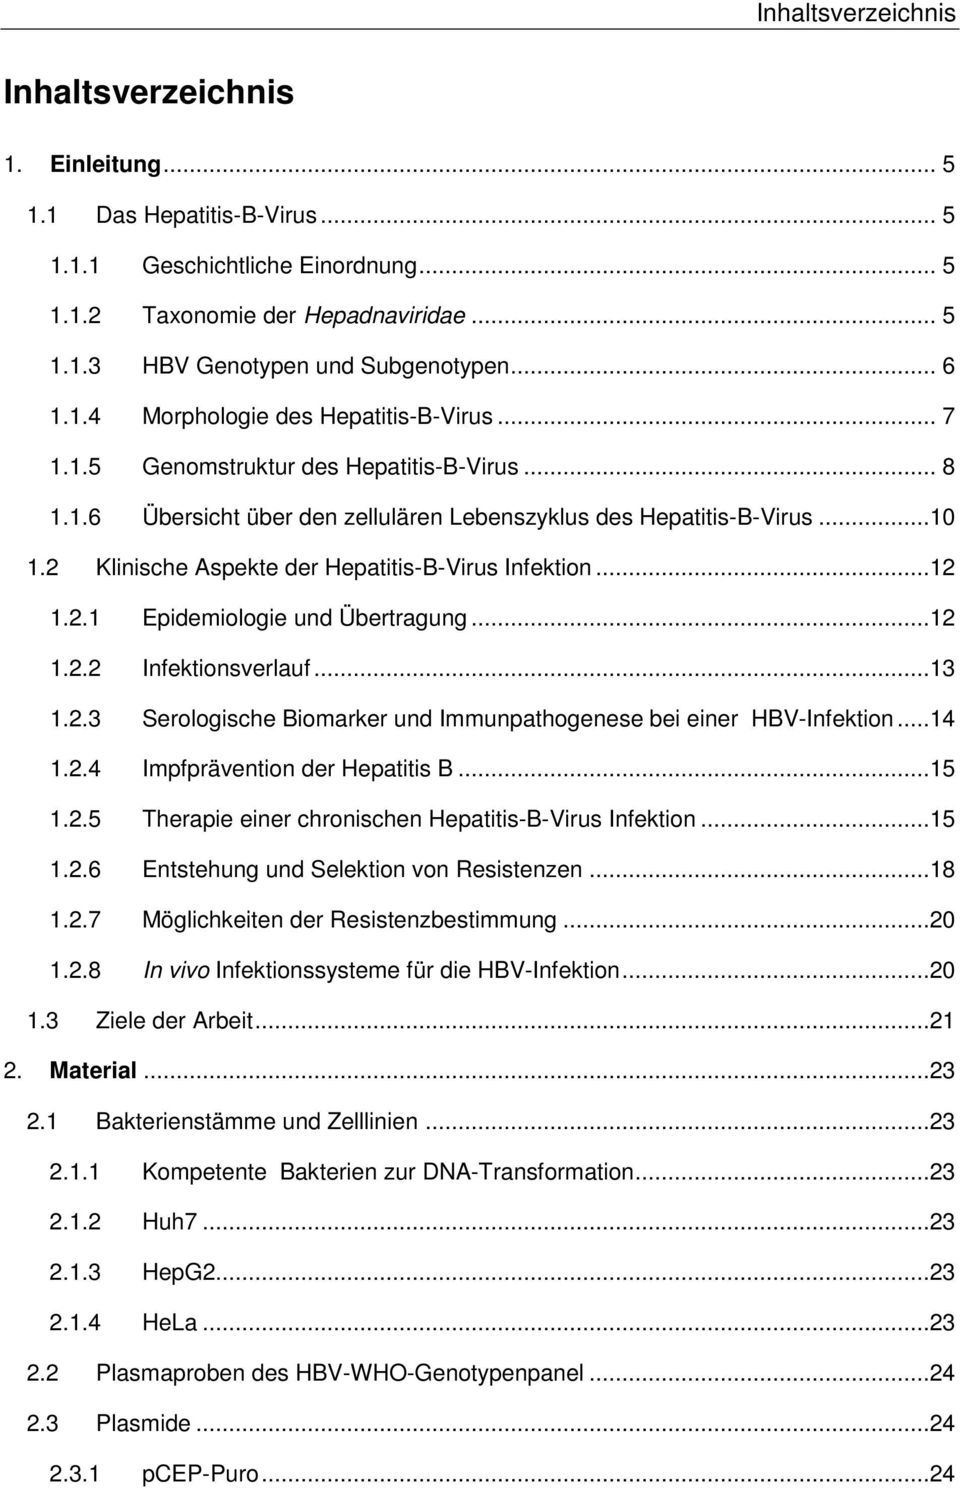 2 Klinische Aspekte der Hepatitis-B-Virus Infektion...12 1.2.1 Epidemiologie und Übertragung...12 1.2.2 Infektionsverlauf...13 1.2.3 Serologische Biomarker und Immunpathogenese bei einer HBV-Infektion.